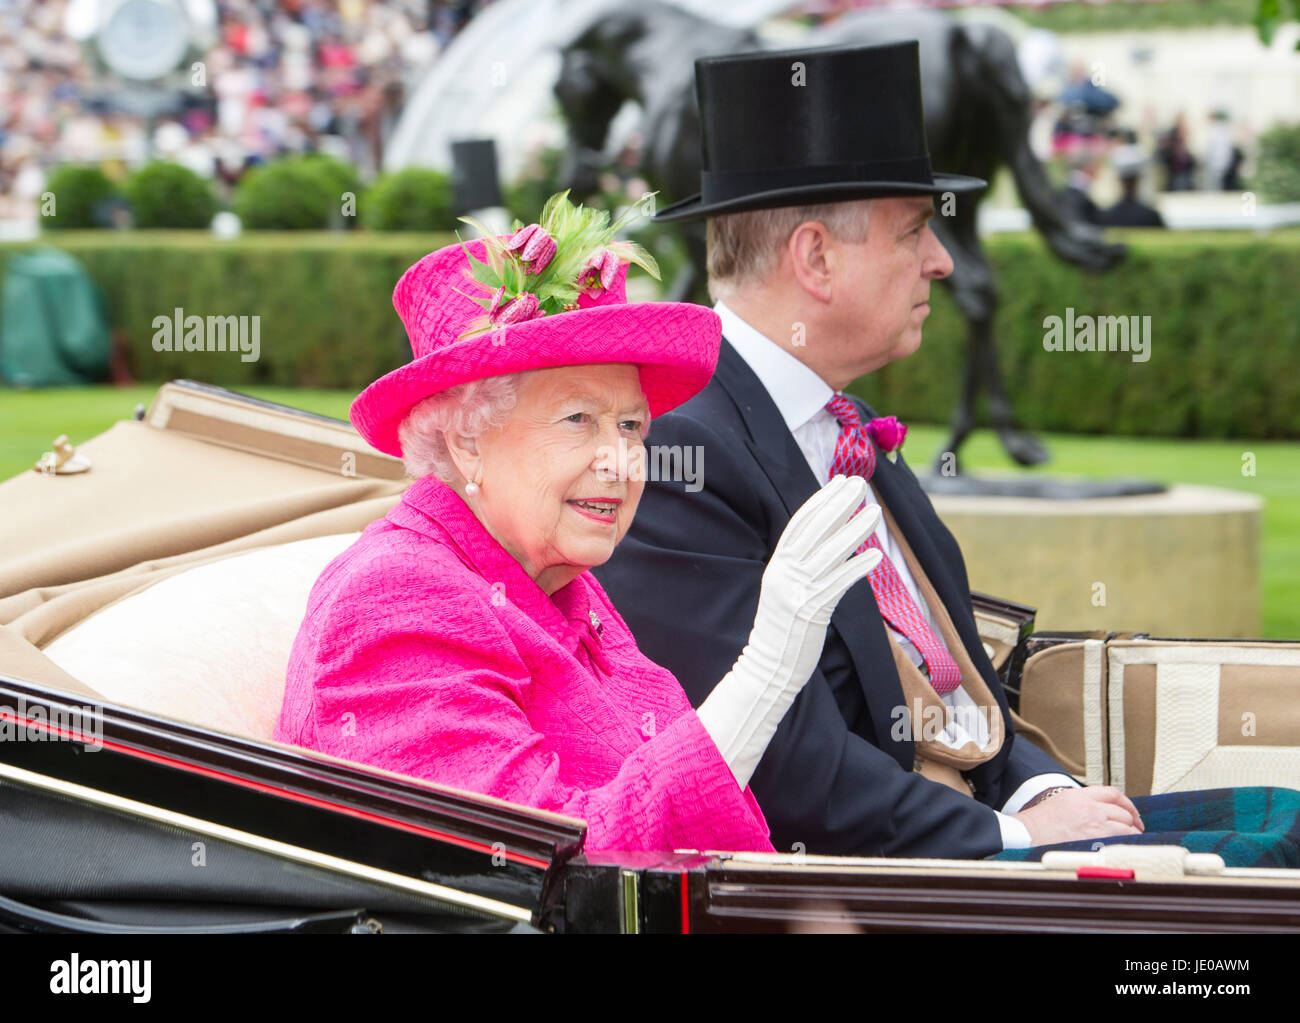 Ascot, Berkshire, UK. 22nd June, 2017. Queen Elizabeth arrives at Royal Ascot 22 June 2017. Credit: John Beasley/Alamy Stock Photo